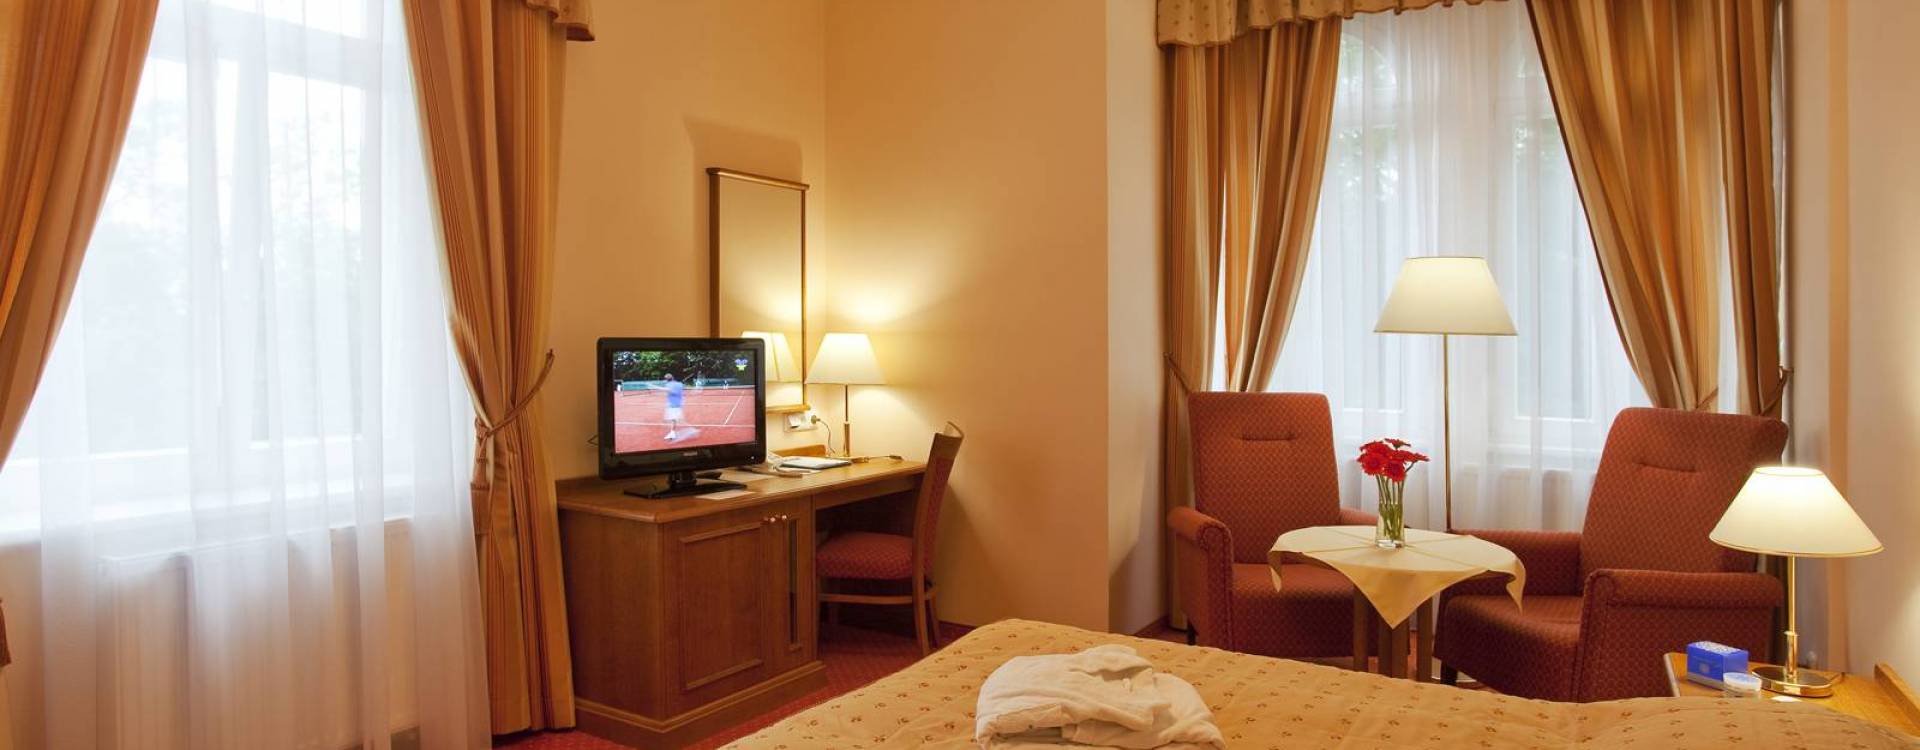 Hotel Vltava - Ubytování s polopenzí